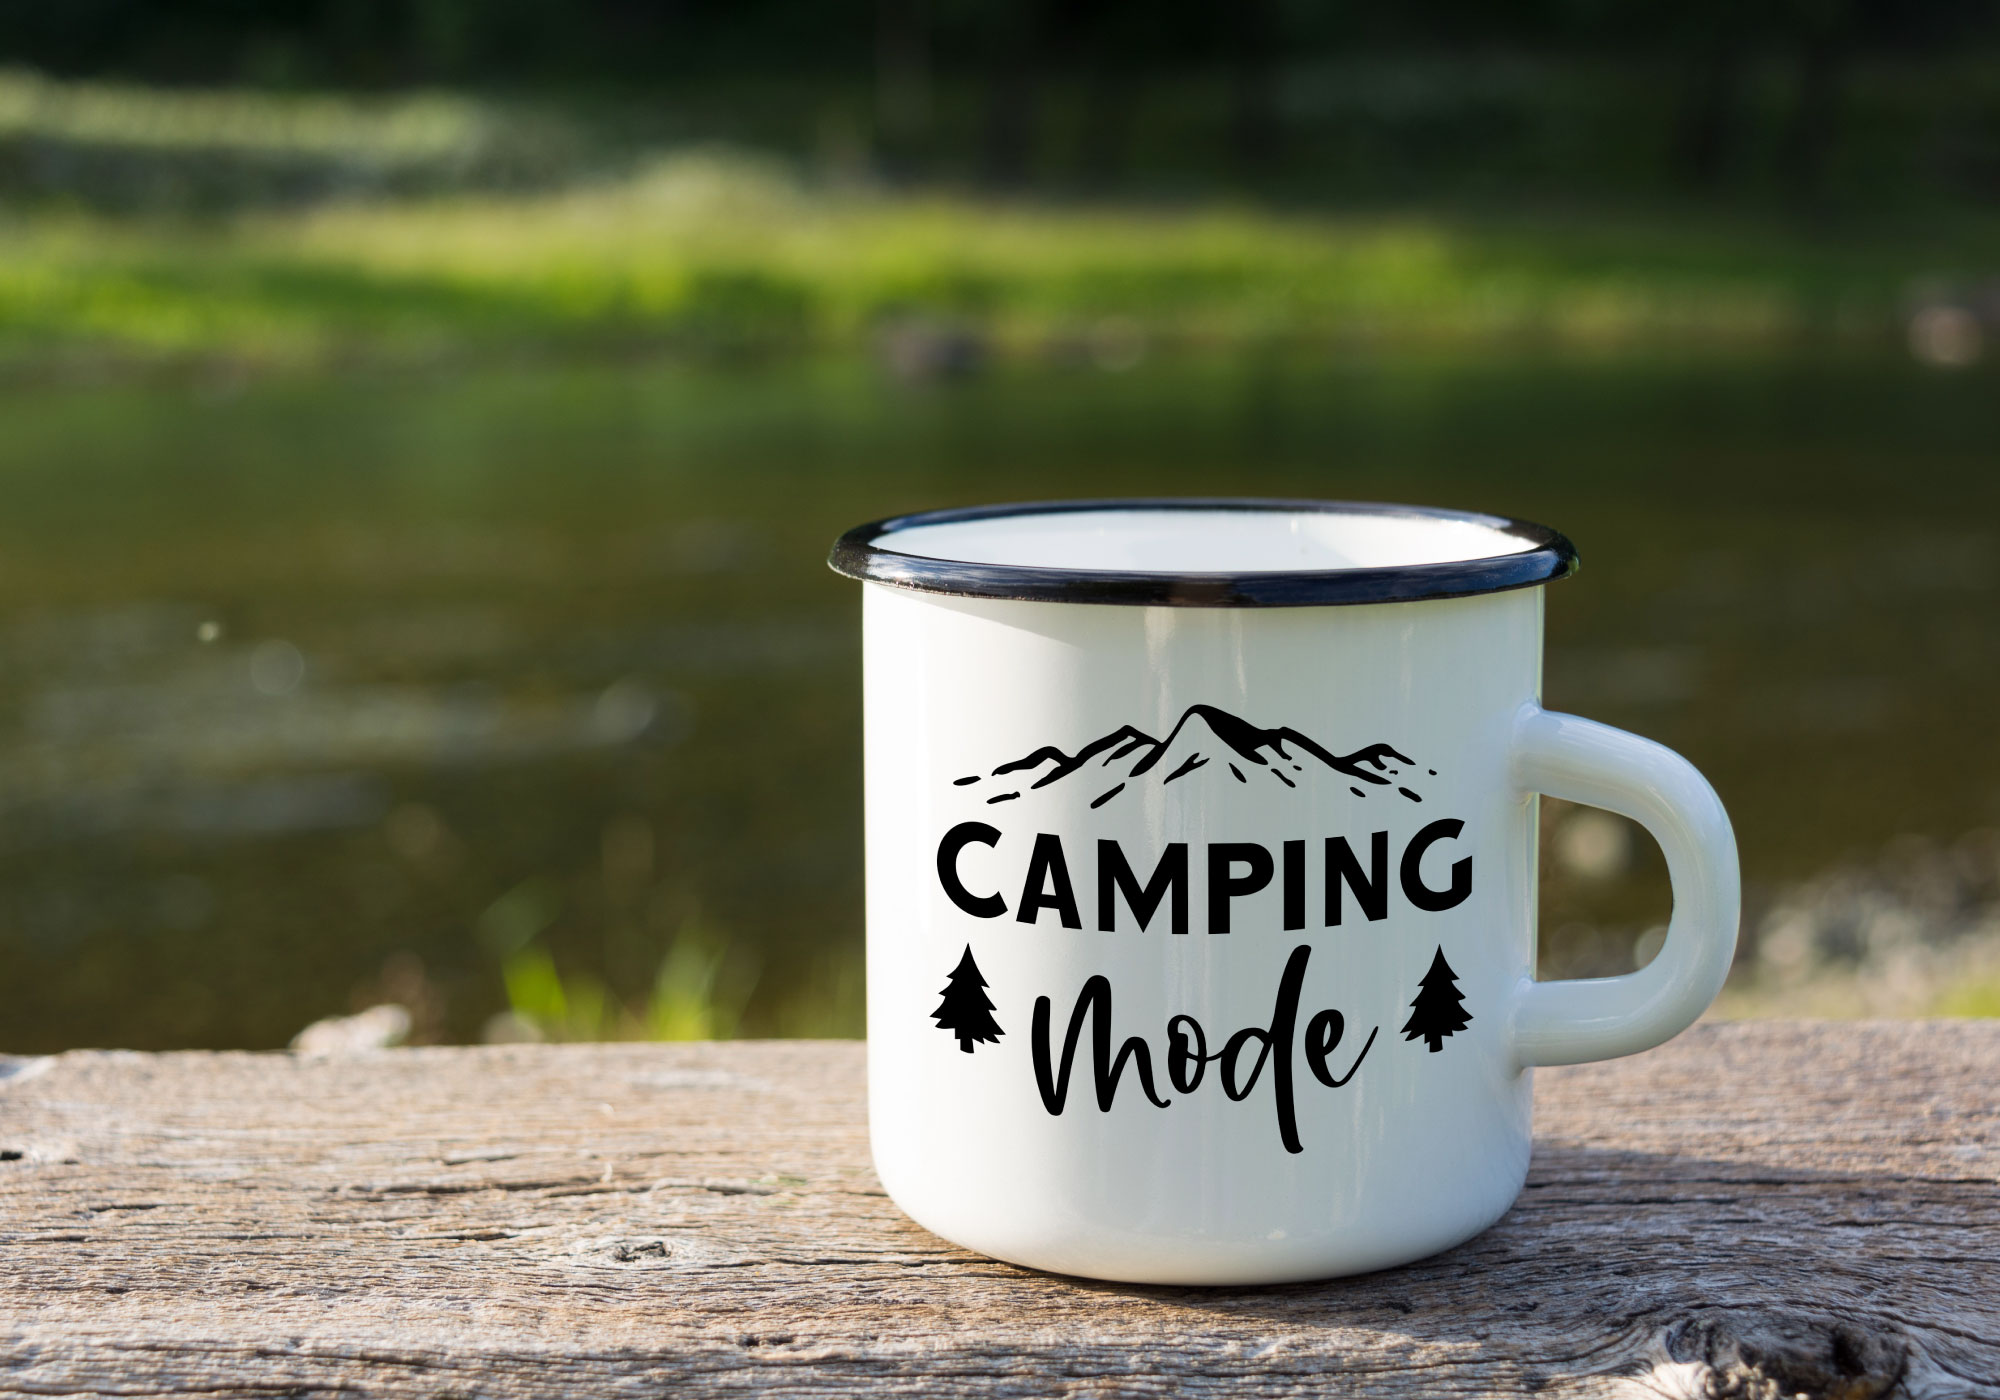 Free Camping Mode SVG